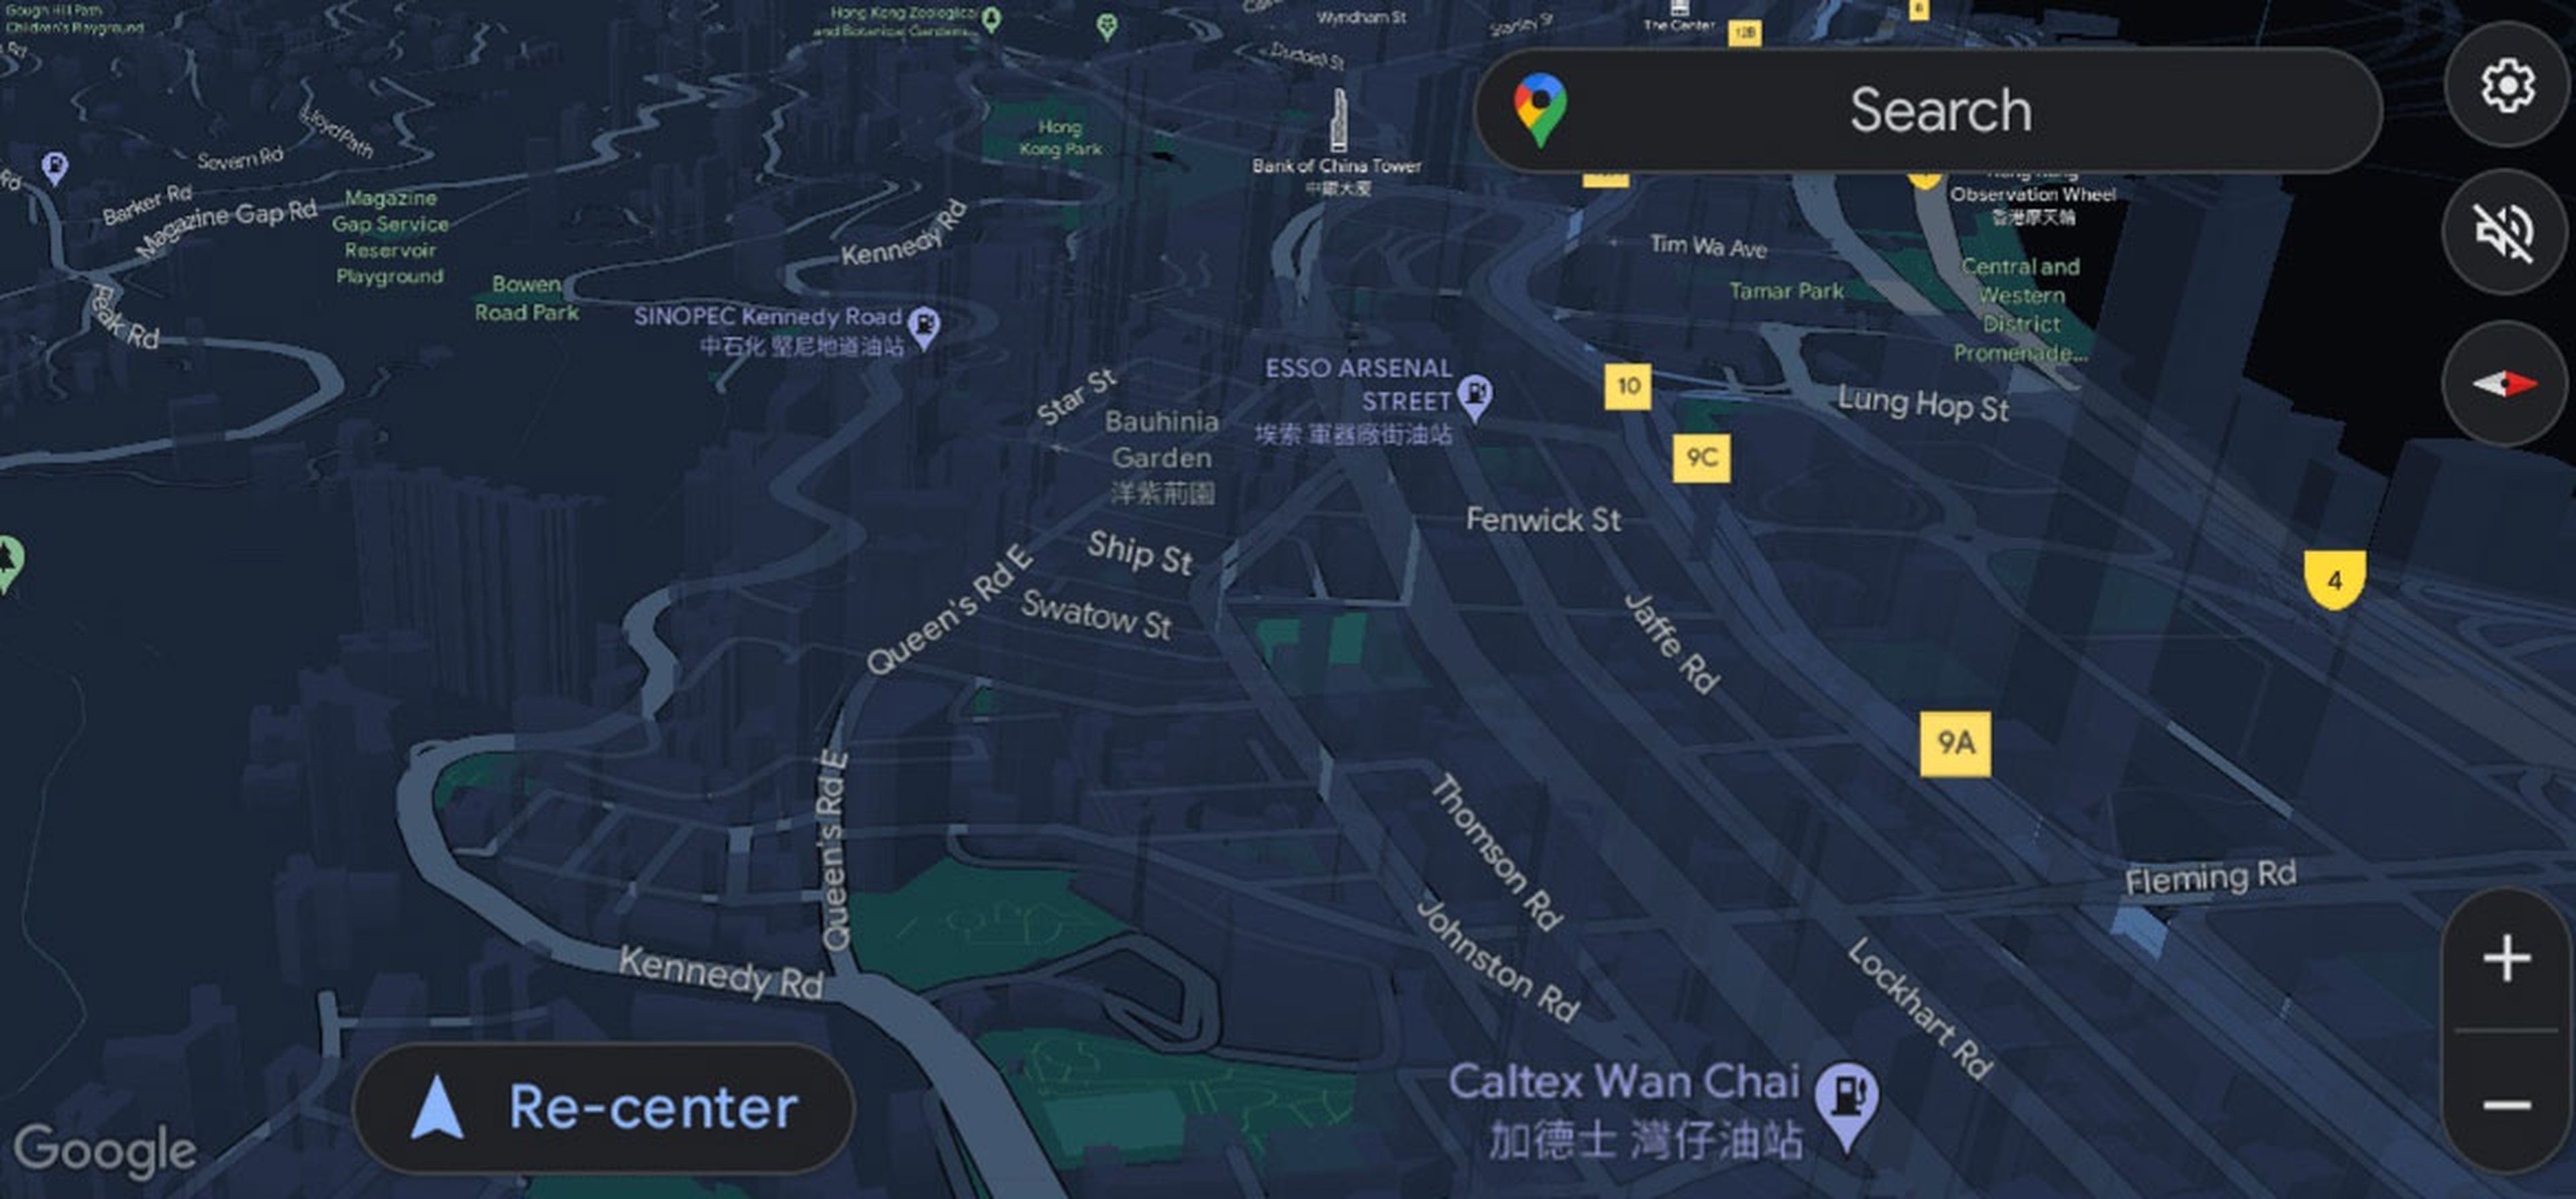 Google Maps añade una nueva vista 3D en Android Auto